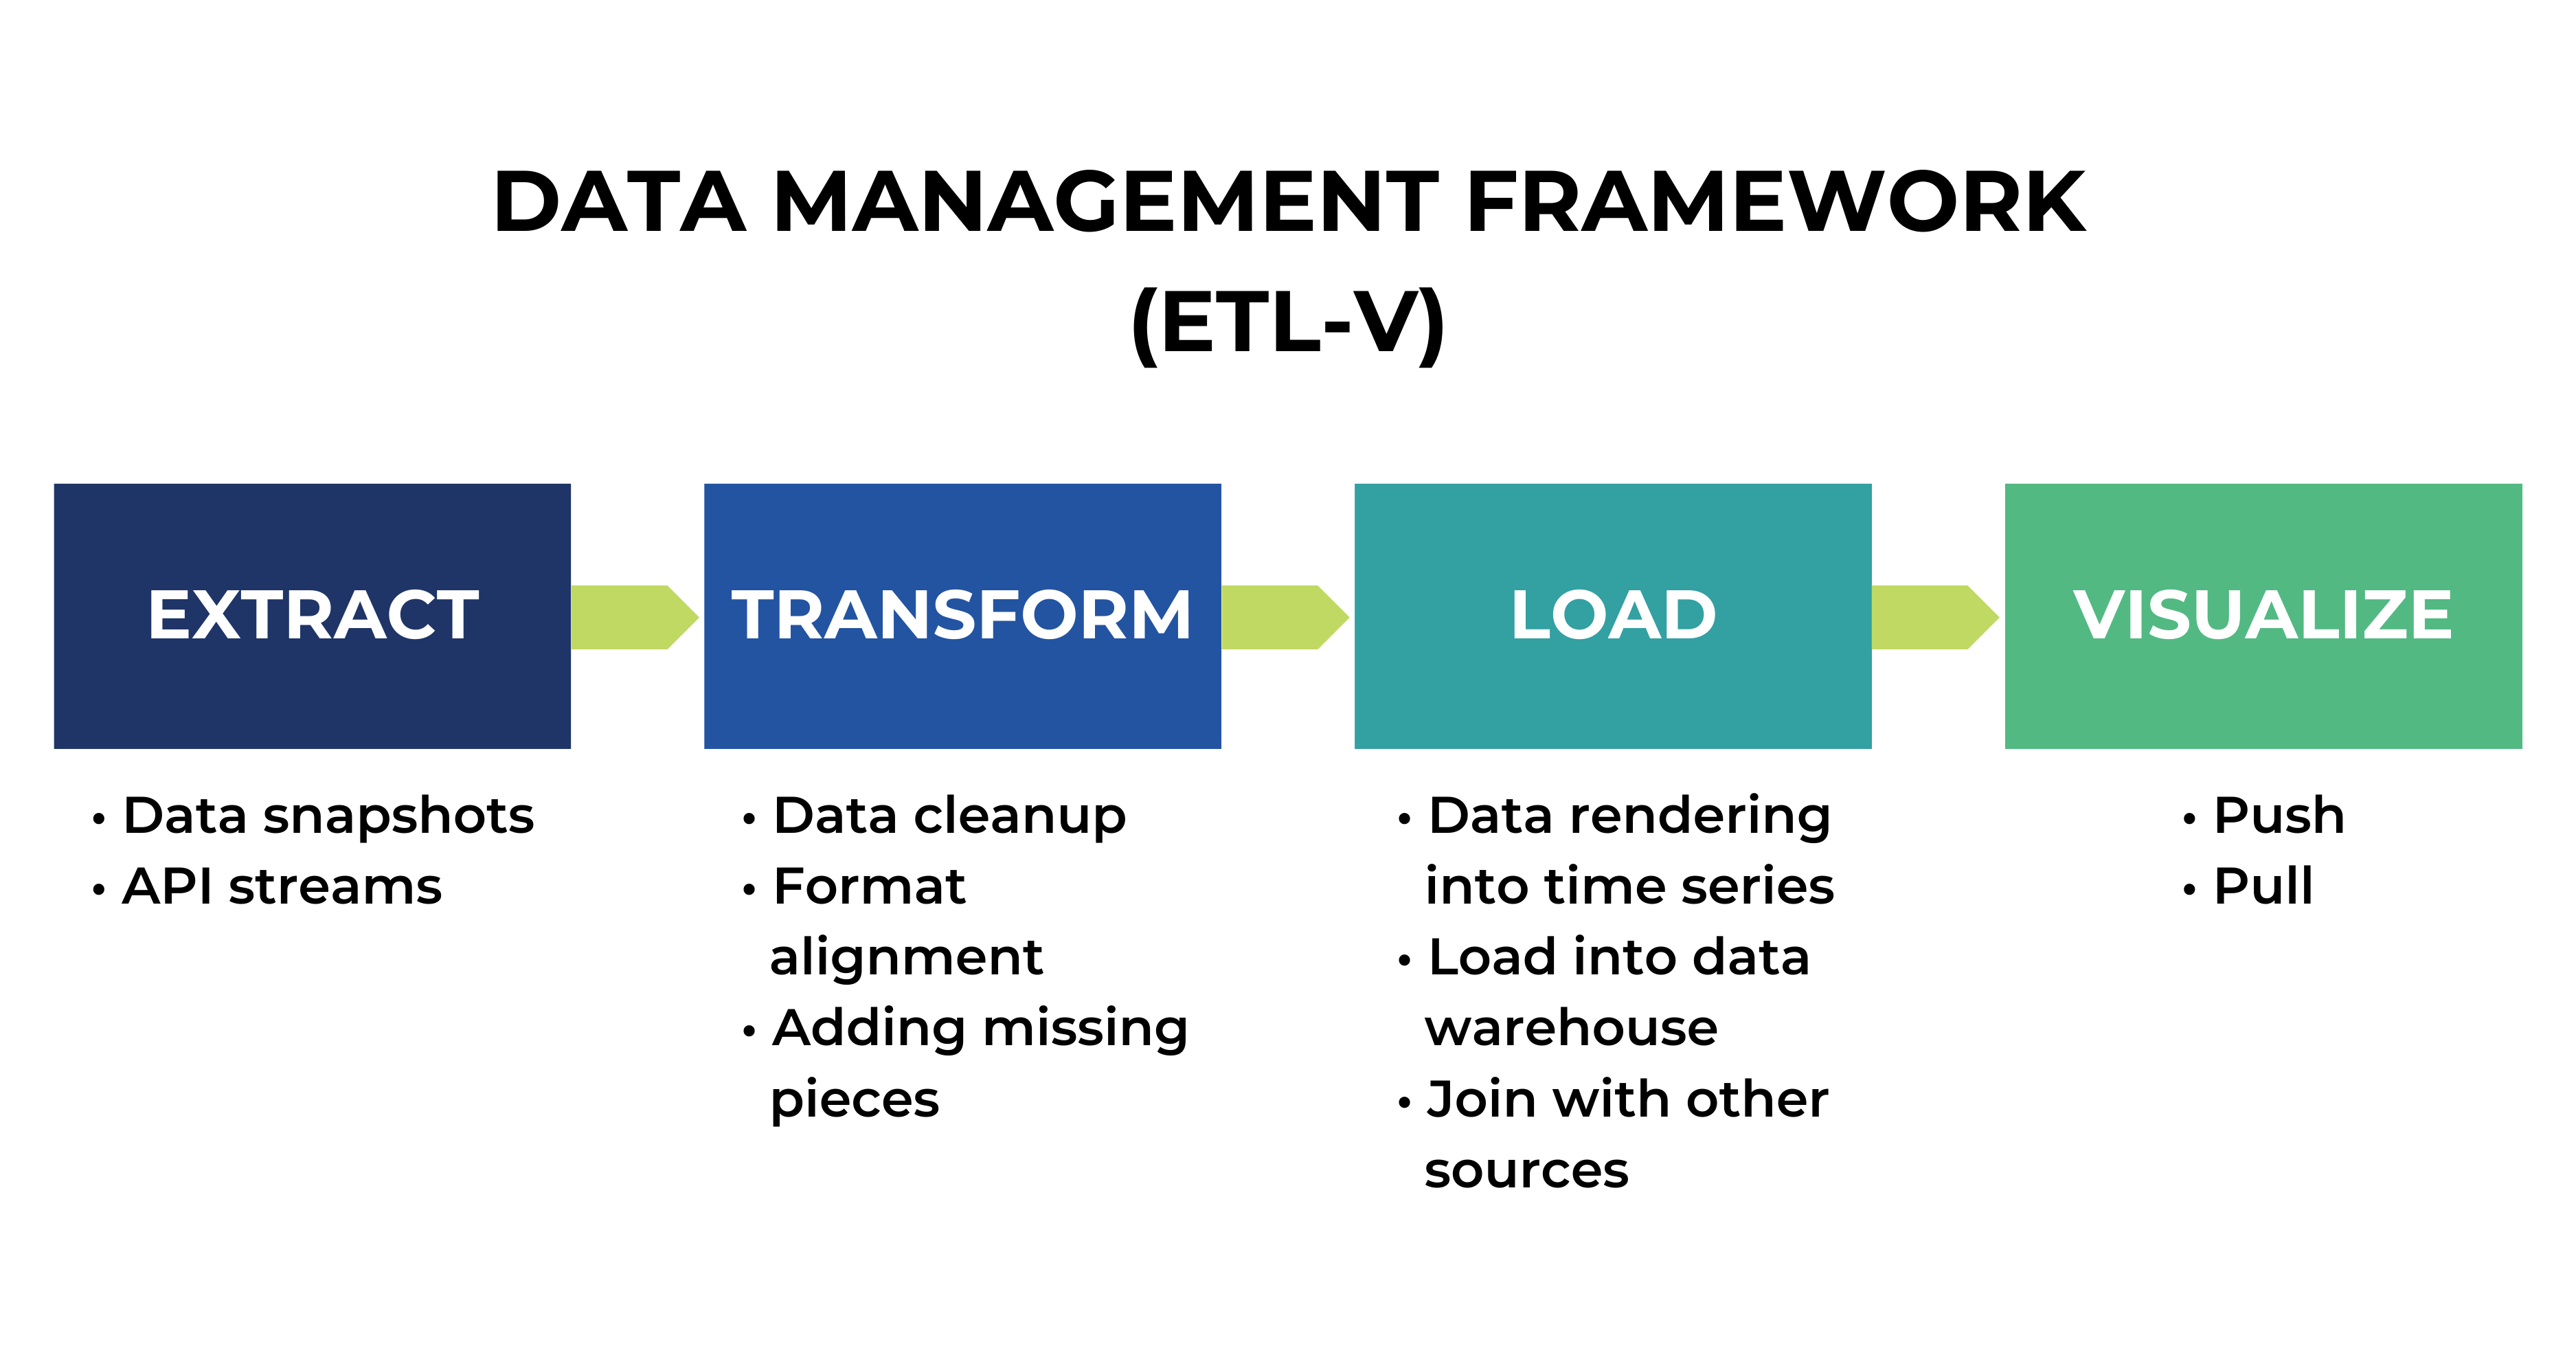 Data management framework (ETL-V)